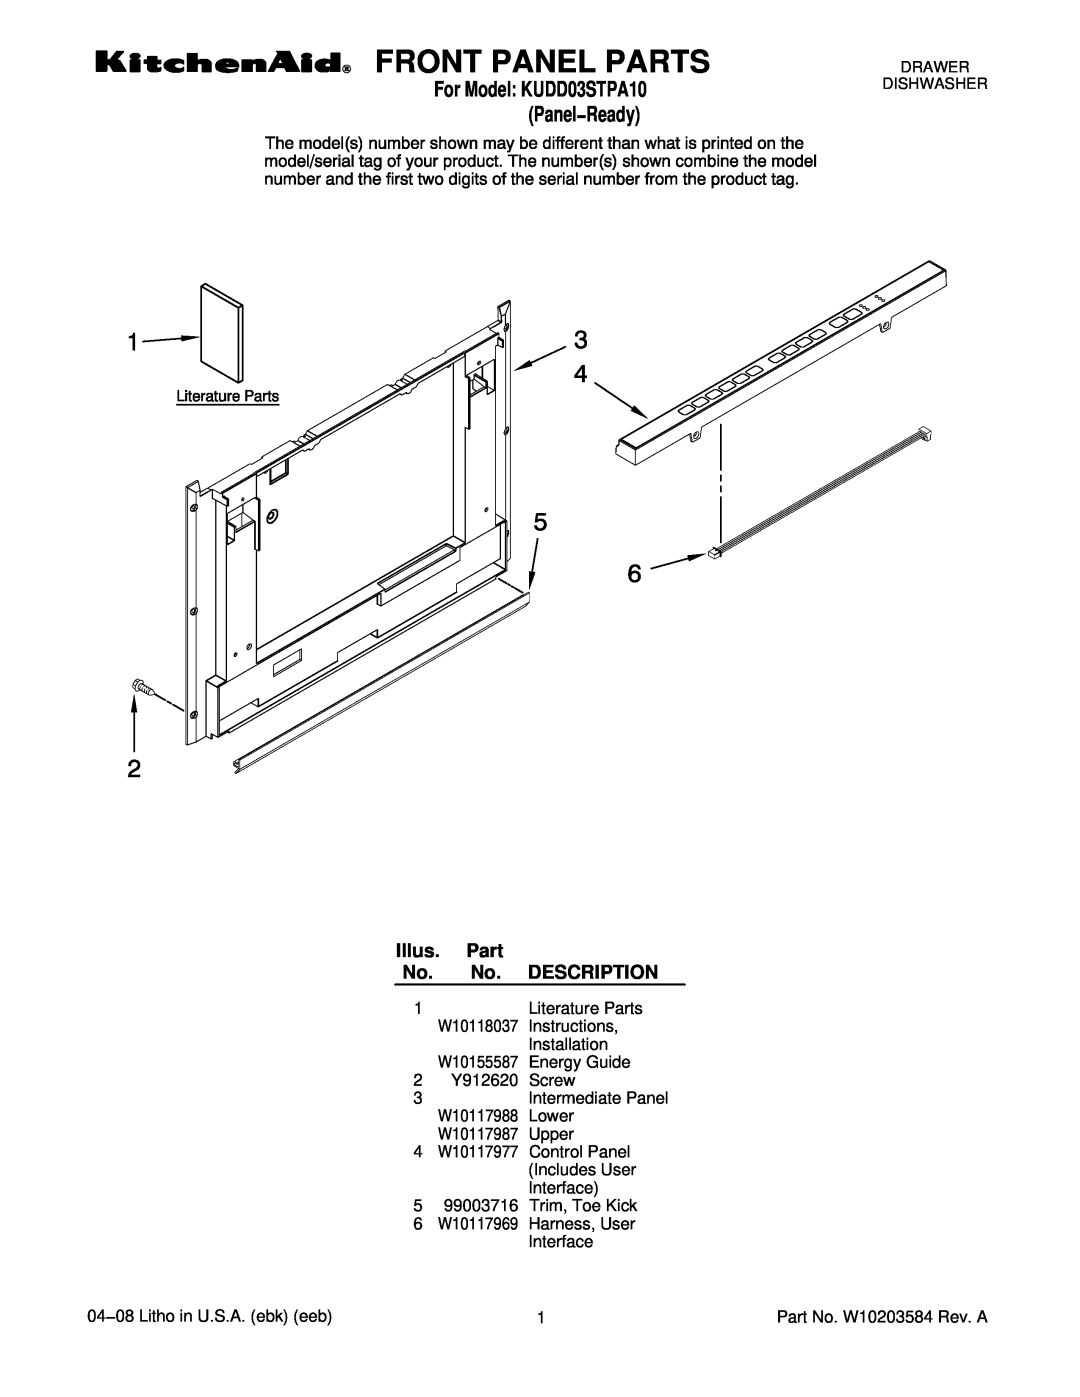 KitchenAid KUDD03STPA10 manual Front Panel Parts, Illus. Part No. No. DESCRIPTION 